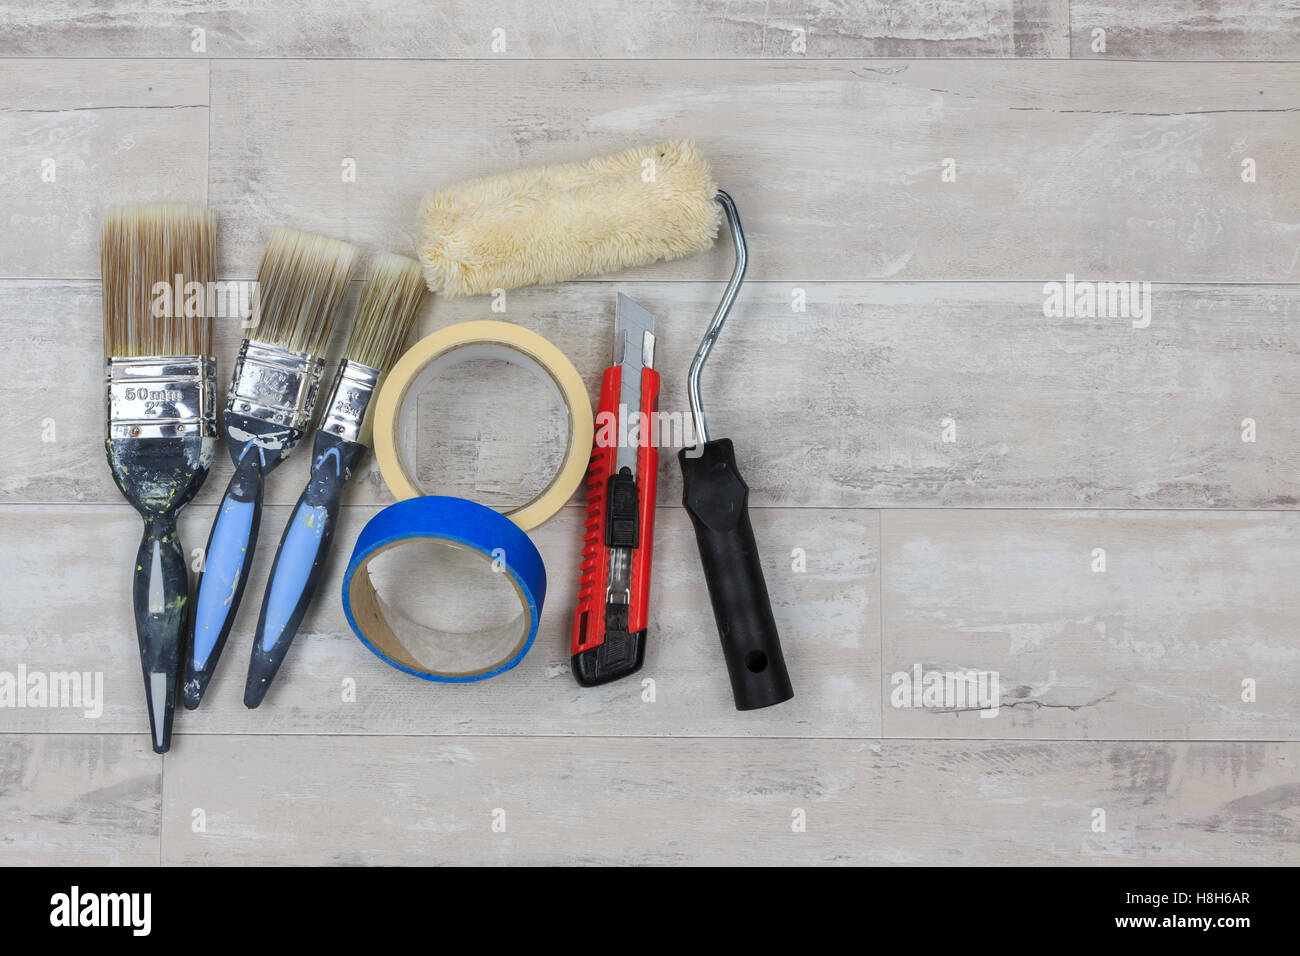 Malen Sie, Pinsel, Farbroller, Messer und Klebeband auf eine shabby Stil Holz Boden Stockfoto